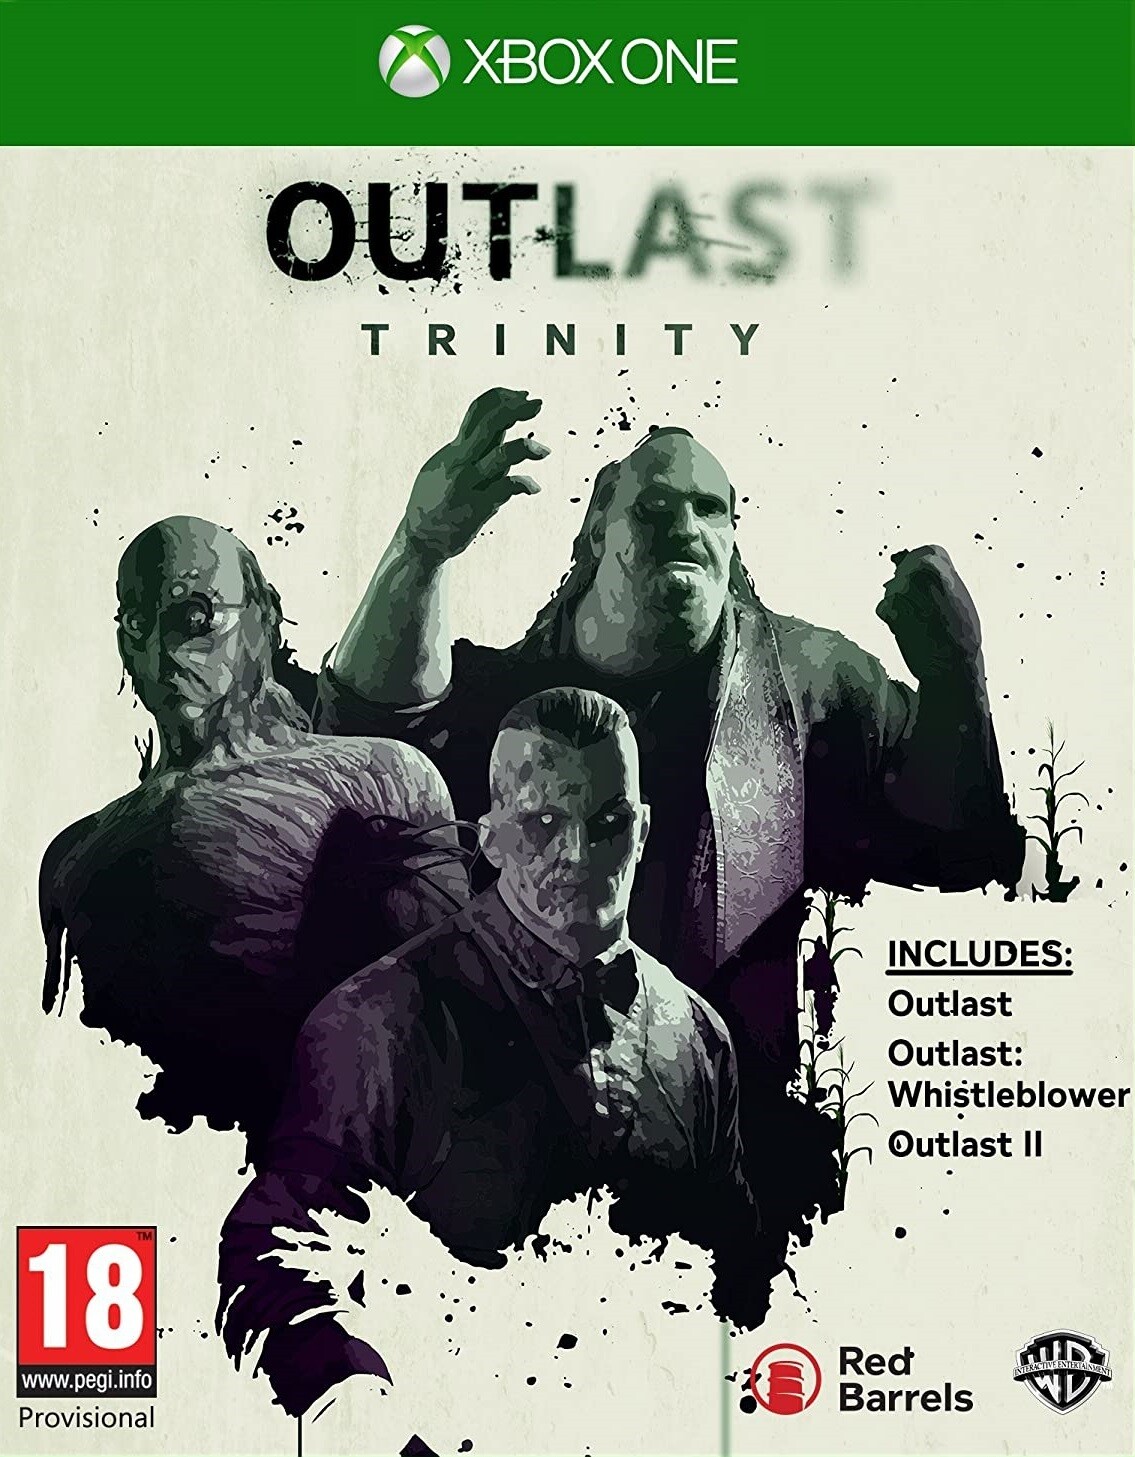 Outlast Trinity (Outlast + Outlast II + Outlast Whistleblower) |Xbox ONE|